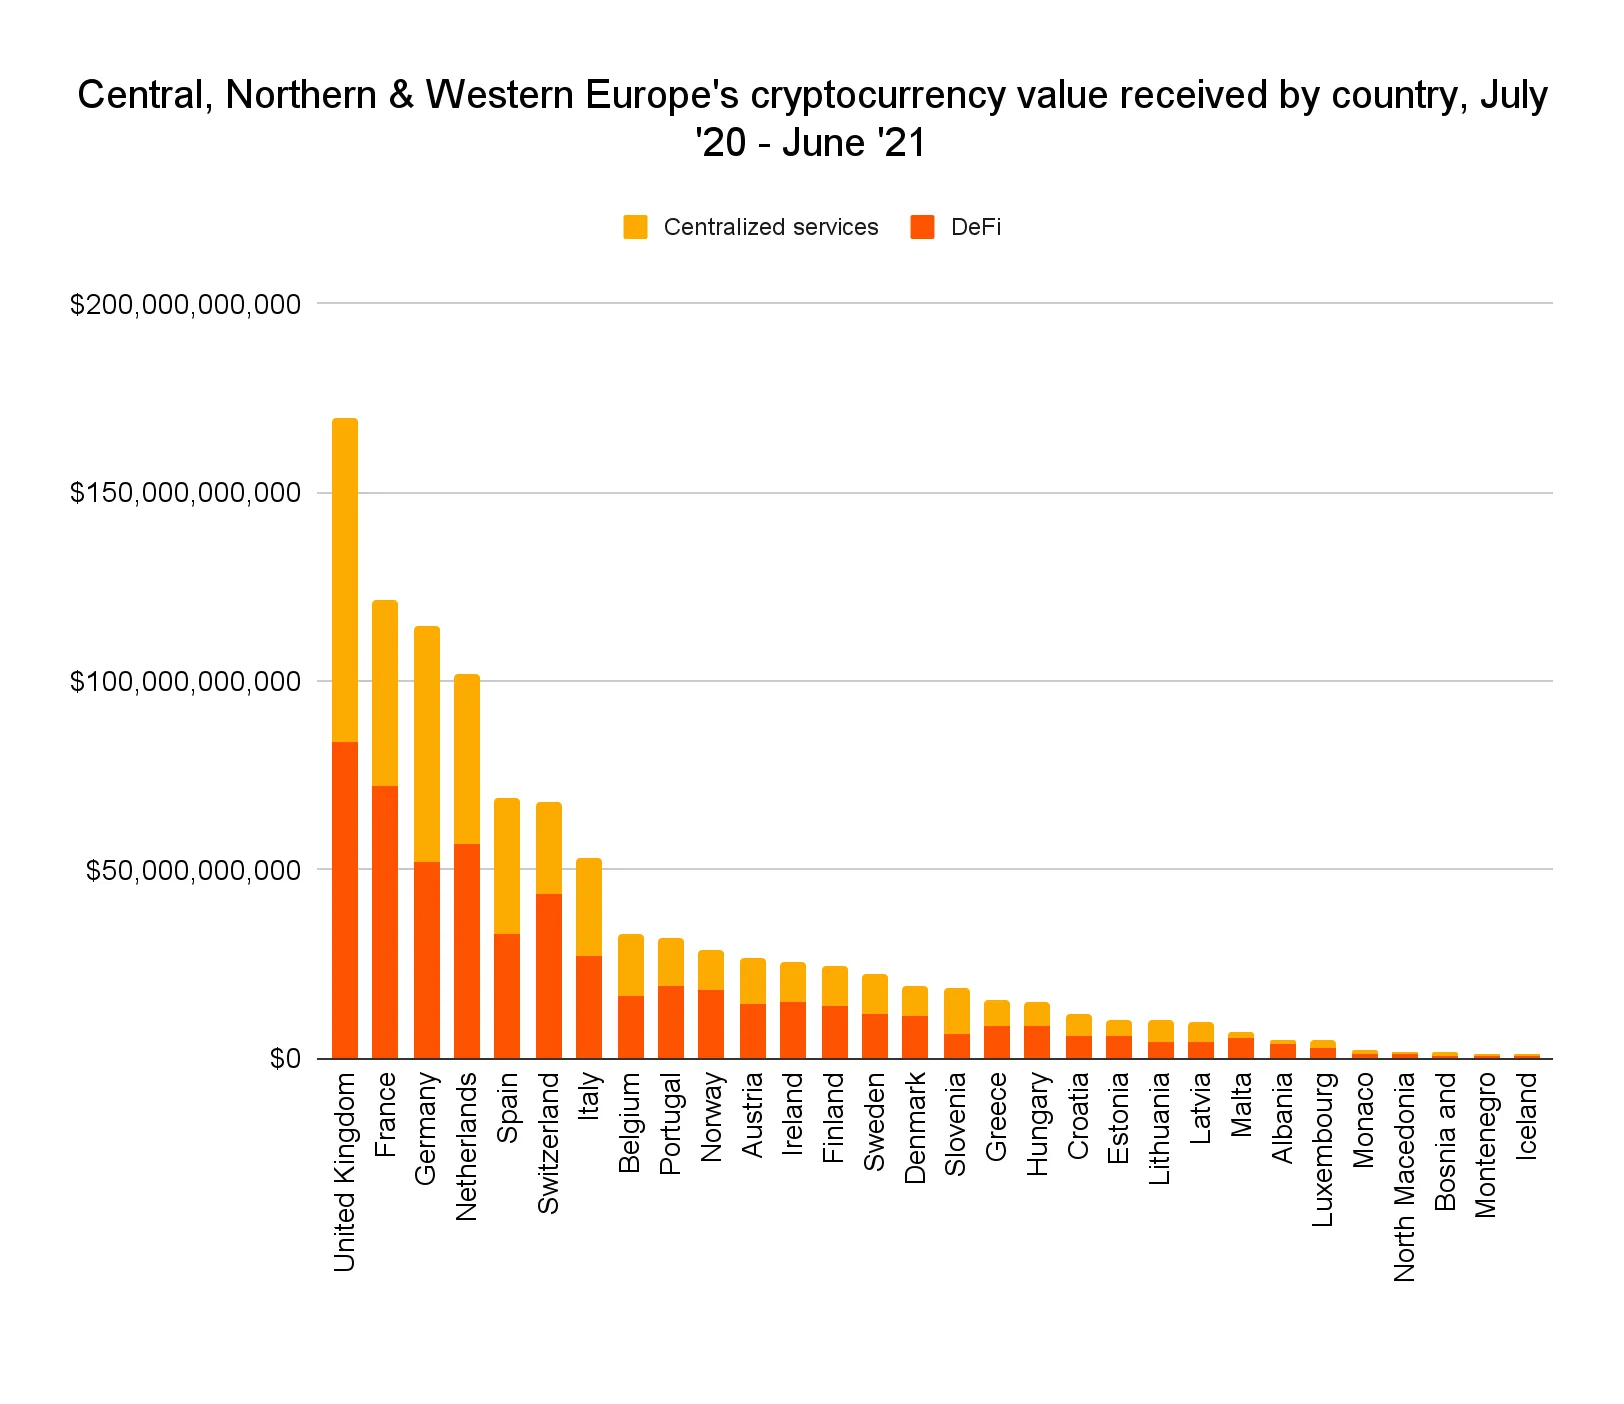 Valor de las criptomonedas recibidas en Europa Central, del Norte y Occidental por país de julio de 2020 a junio de 2021. Imagen: Chainalysis 